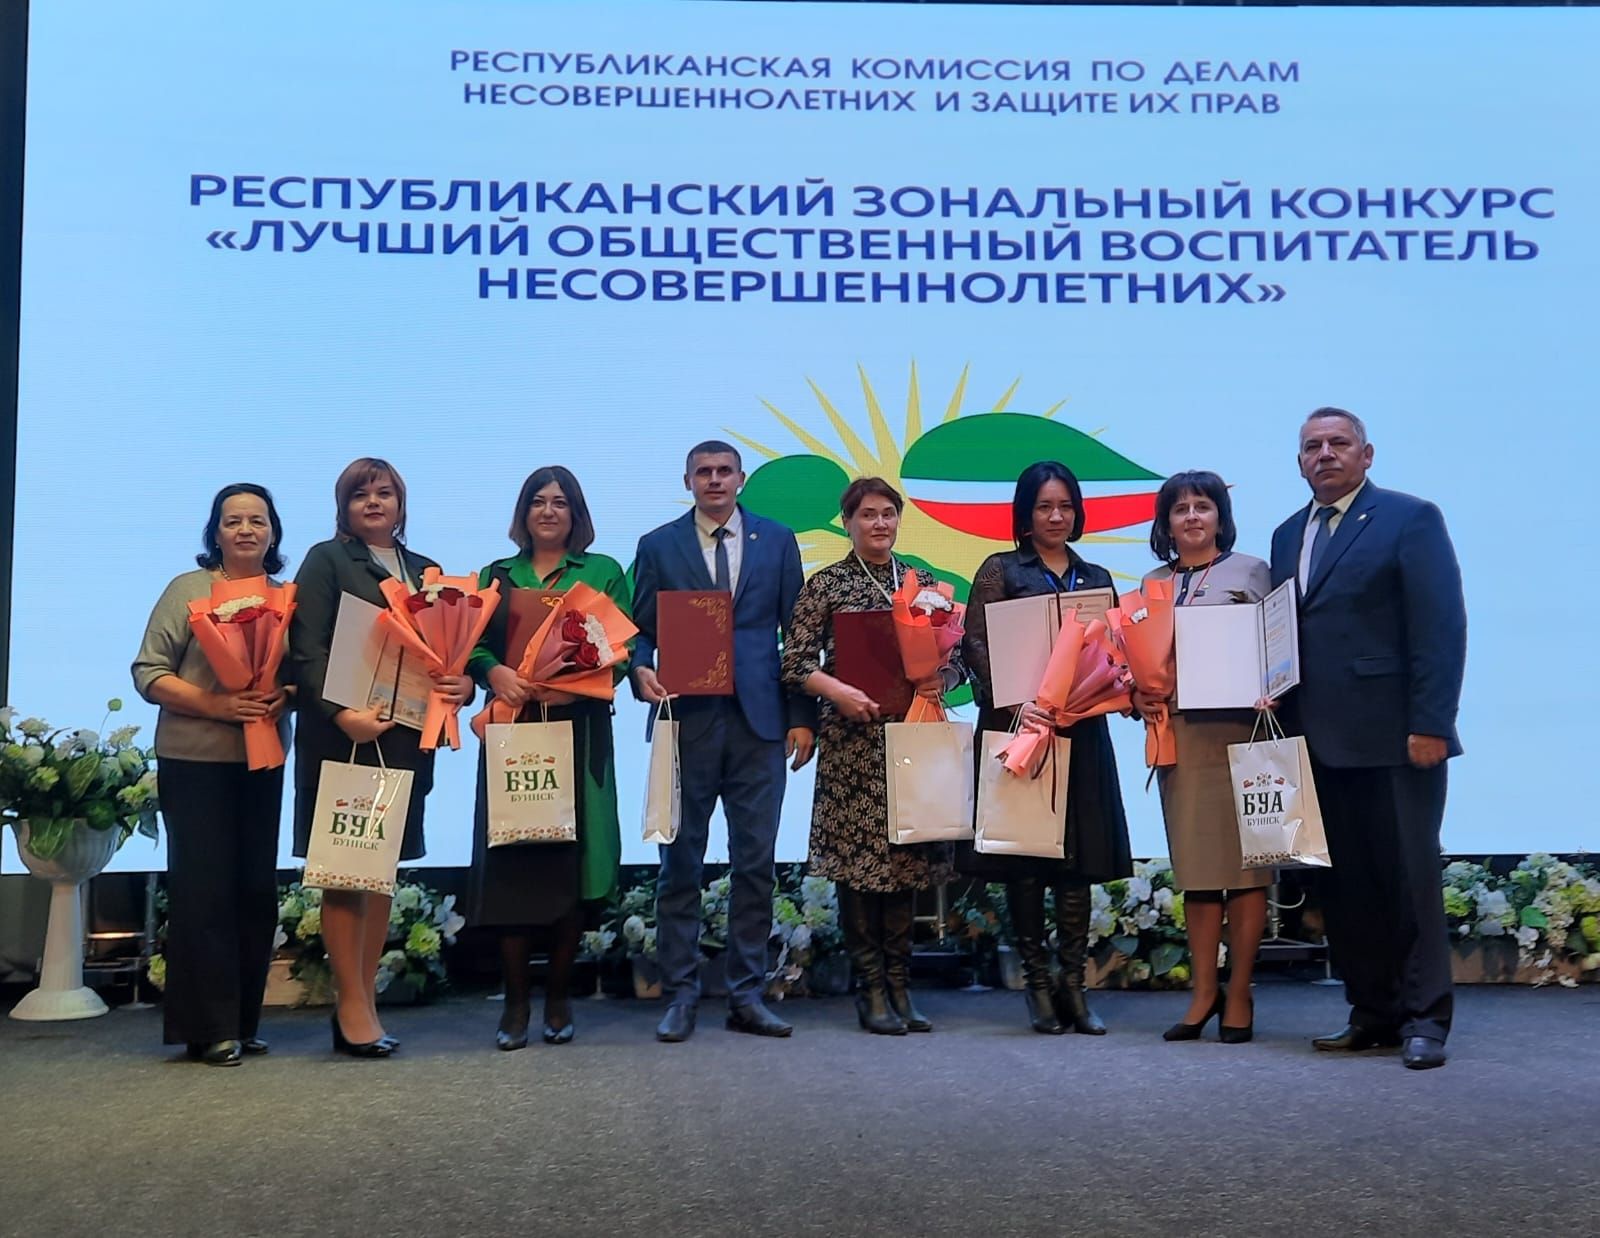 Руслан Вильданов стал победителем конкурса «Лучший общественный воспитатель несовершеннолетних РТ»